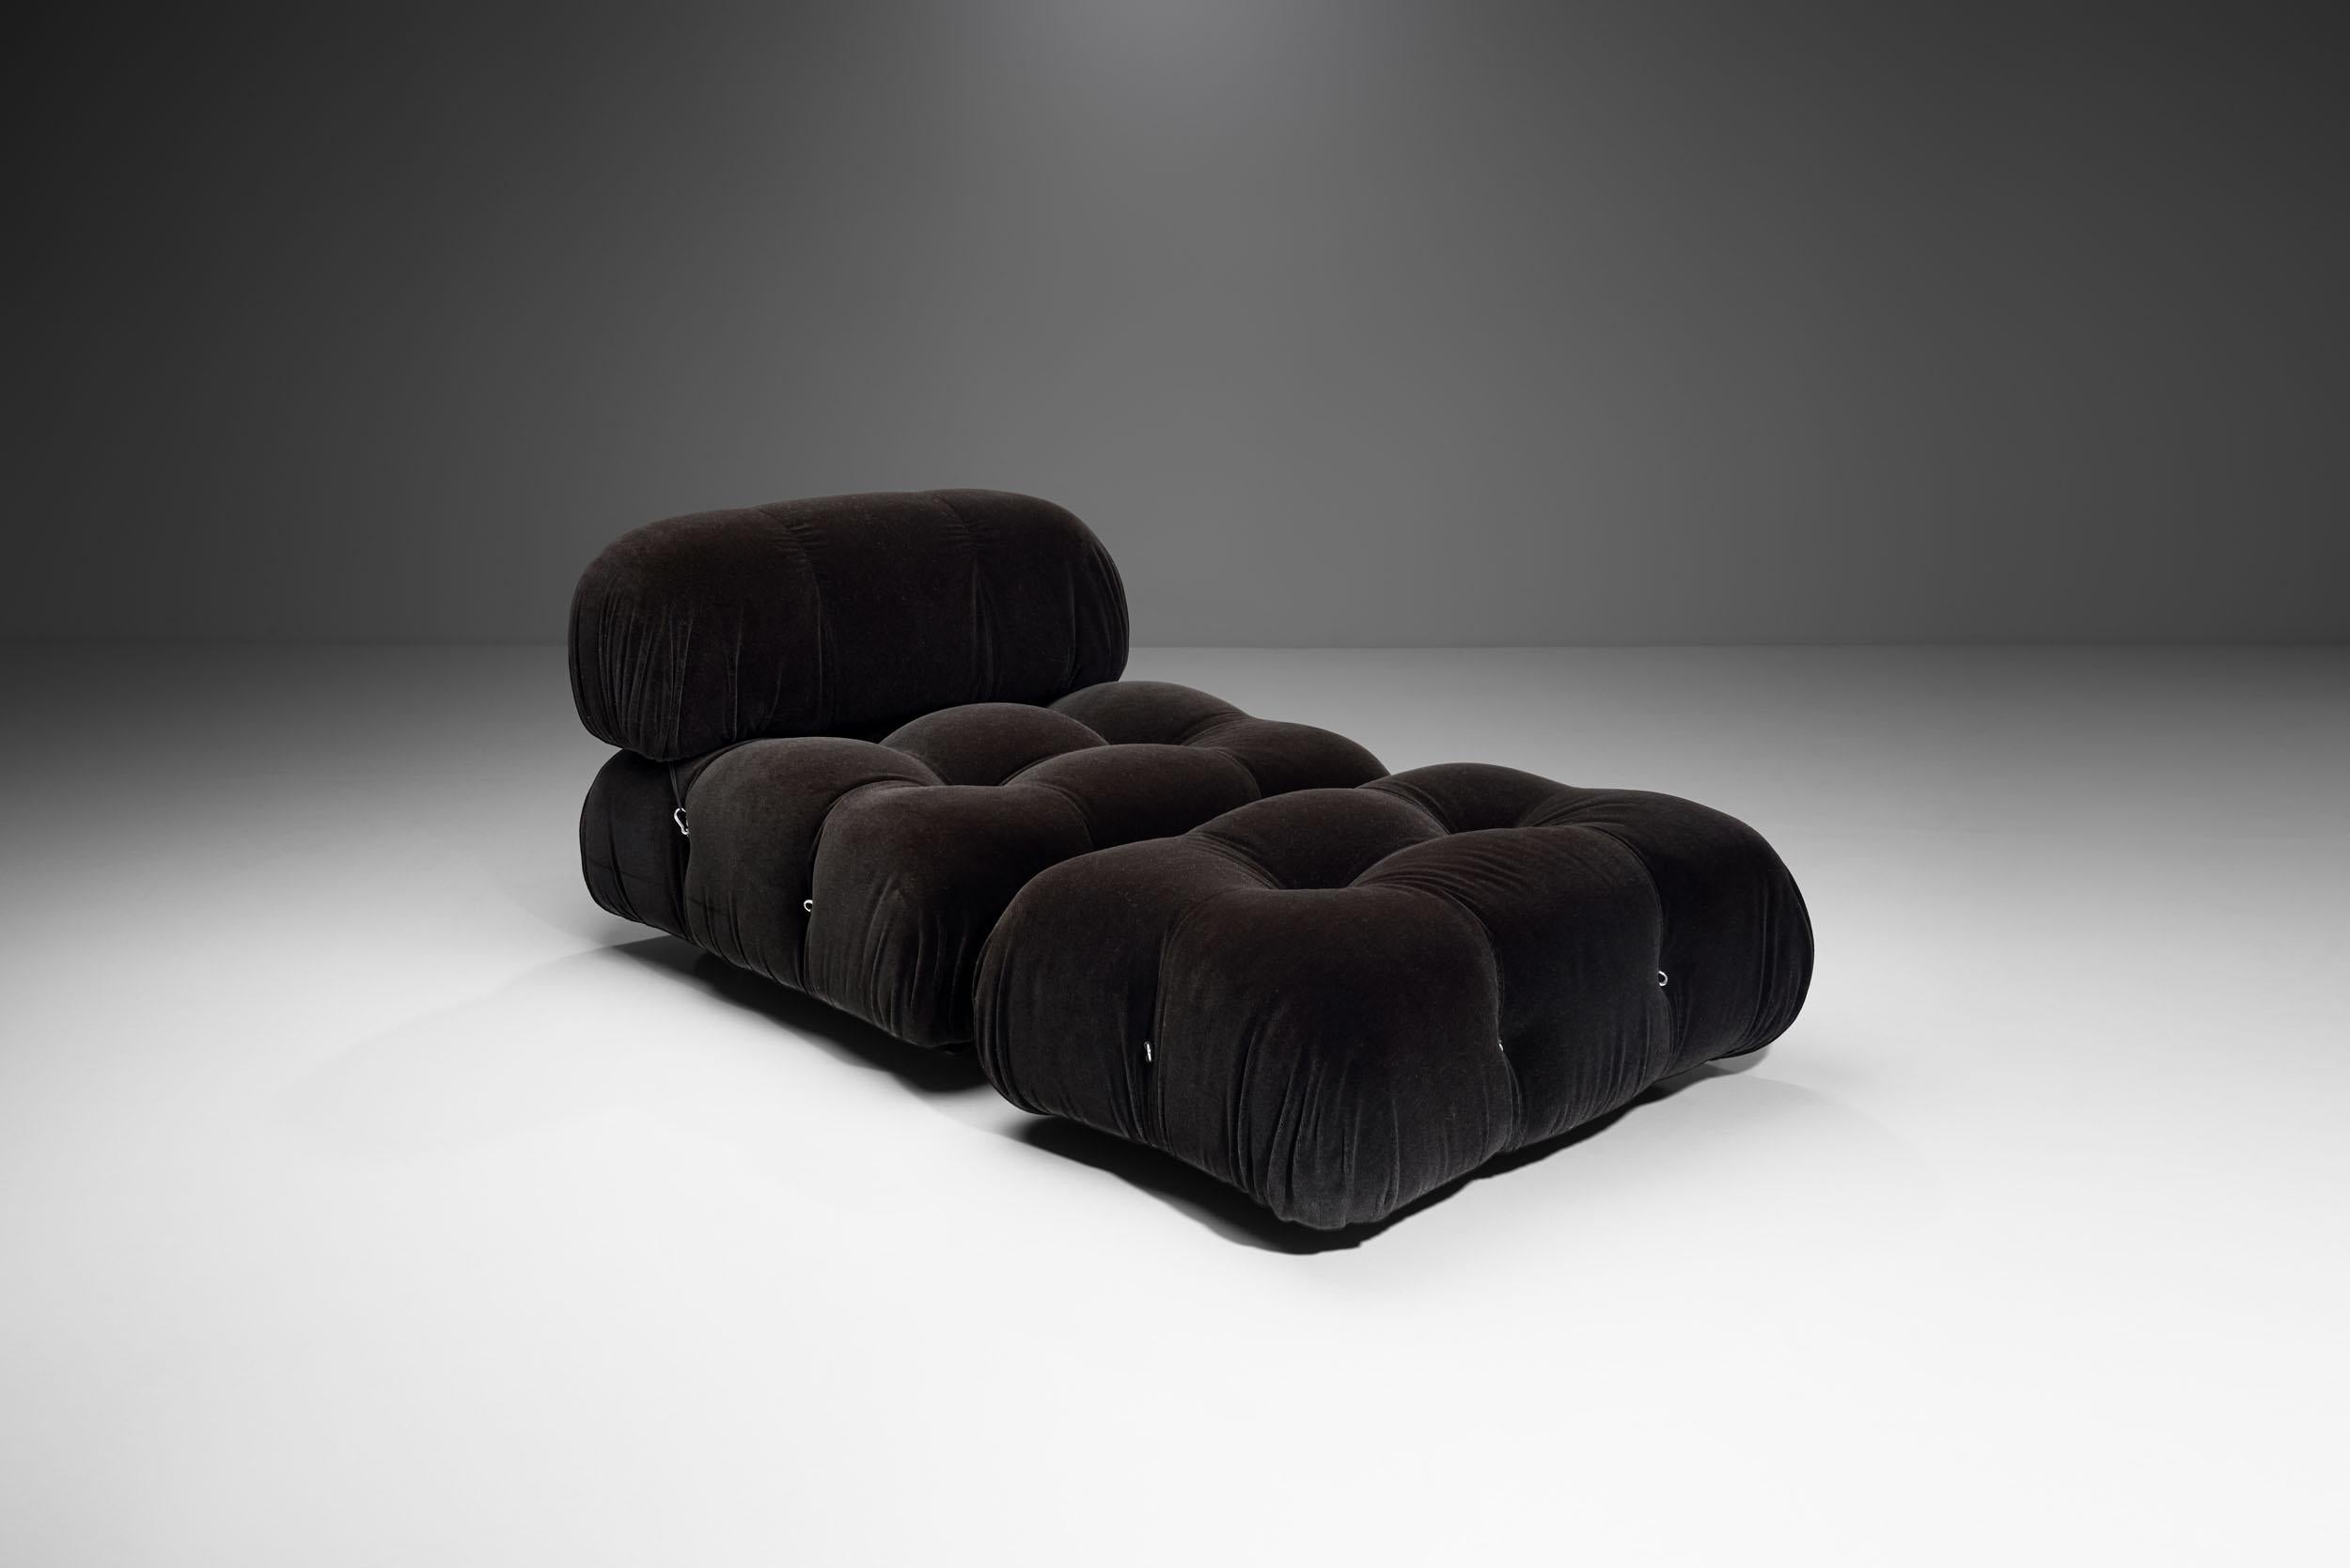 Post-Modern Dark “Camaleonda” Modular Sofa in 4 Segments by Mario Bellini for B&B, Italy 197